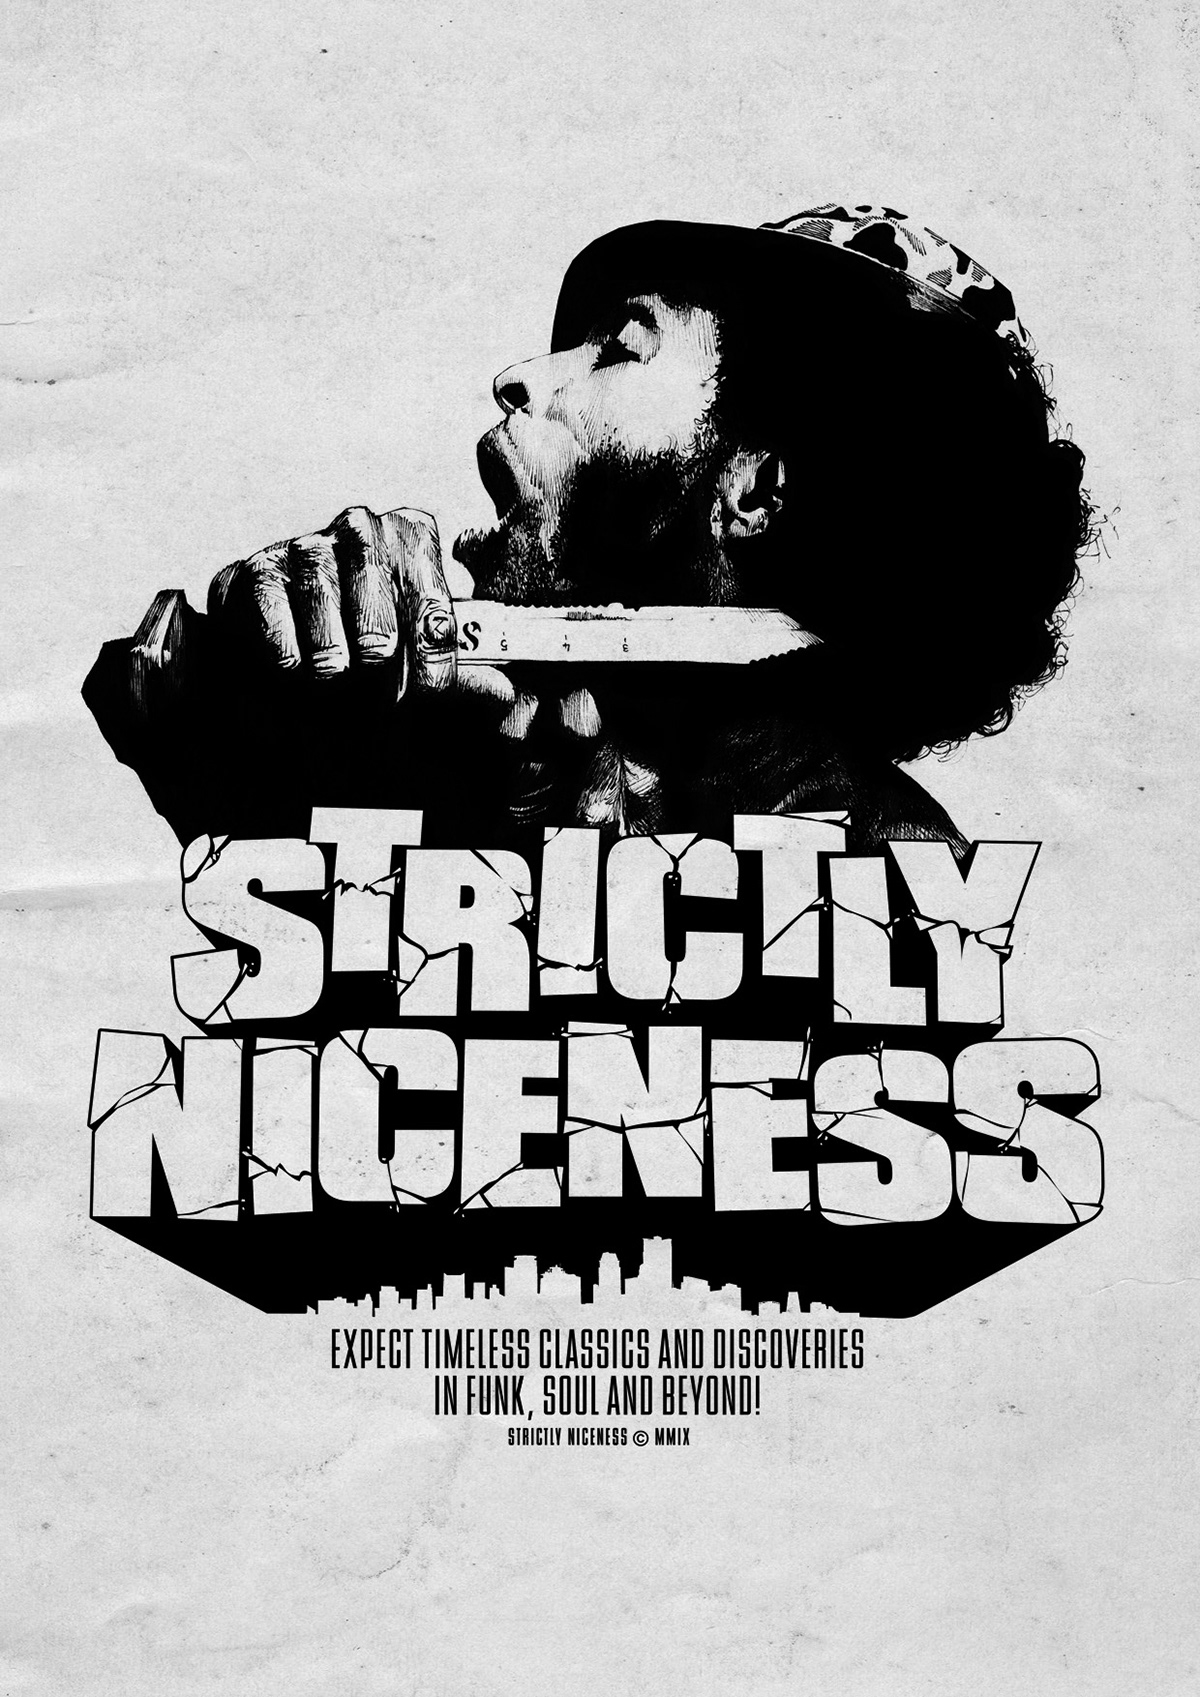 strictly niceness flyer poster Funk soul datalaze steve marchal arnaud kool vintage